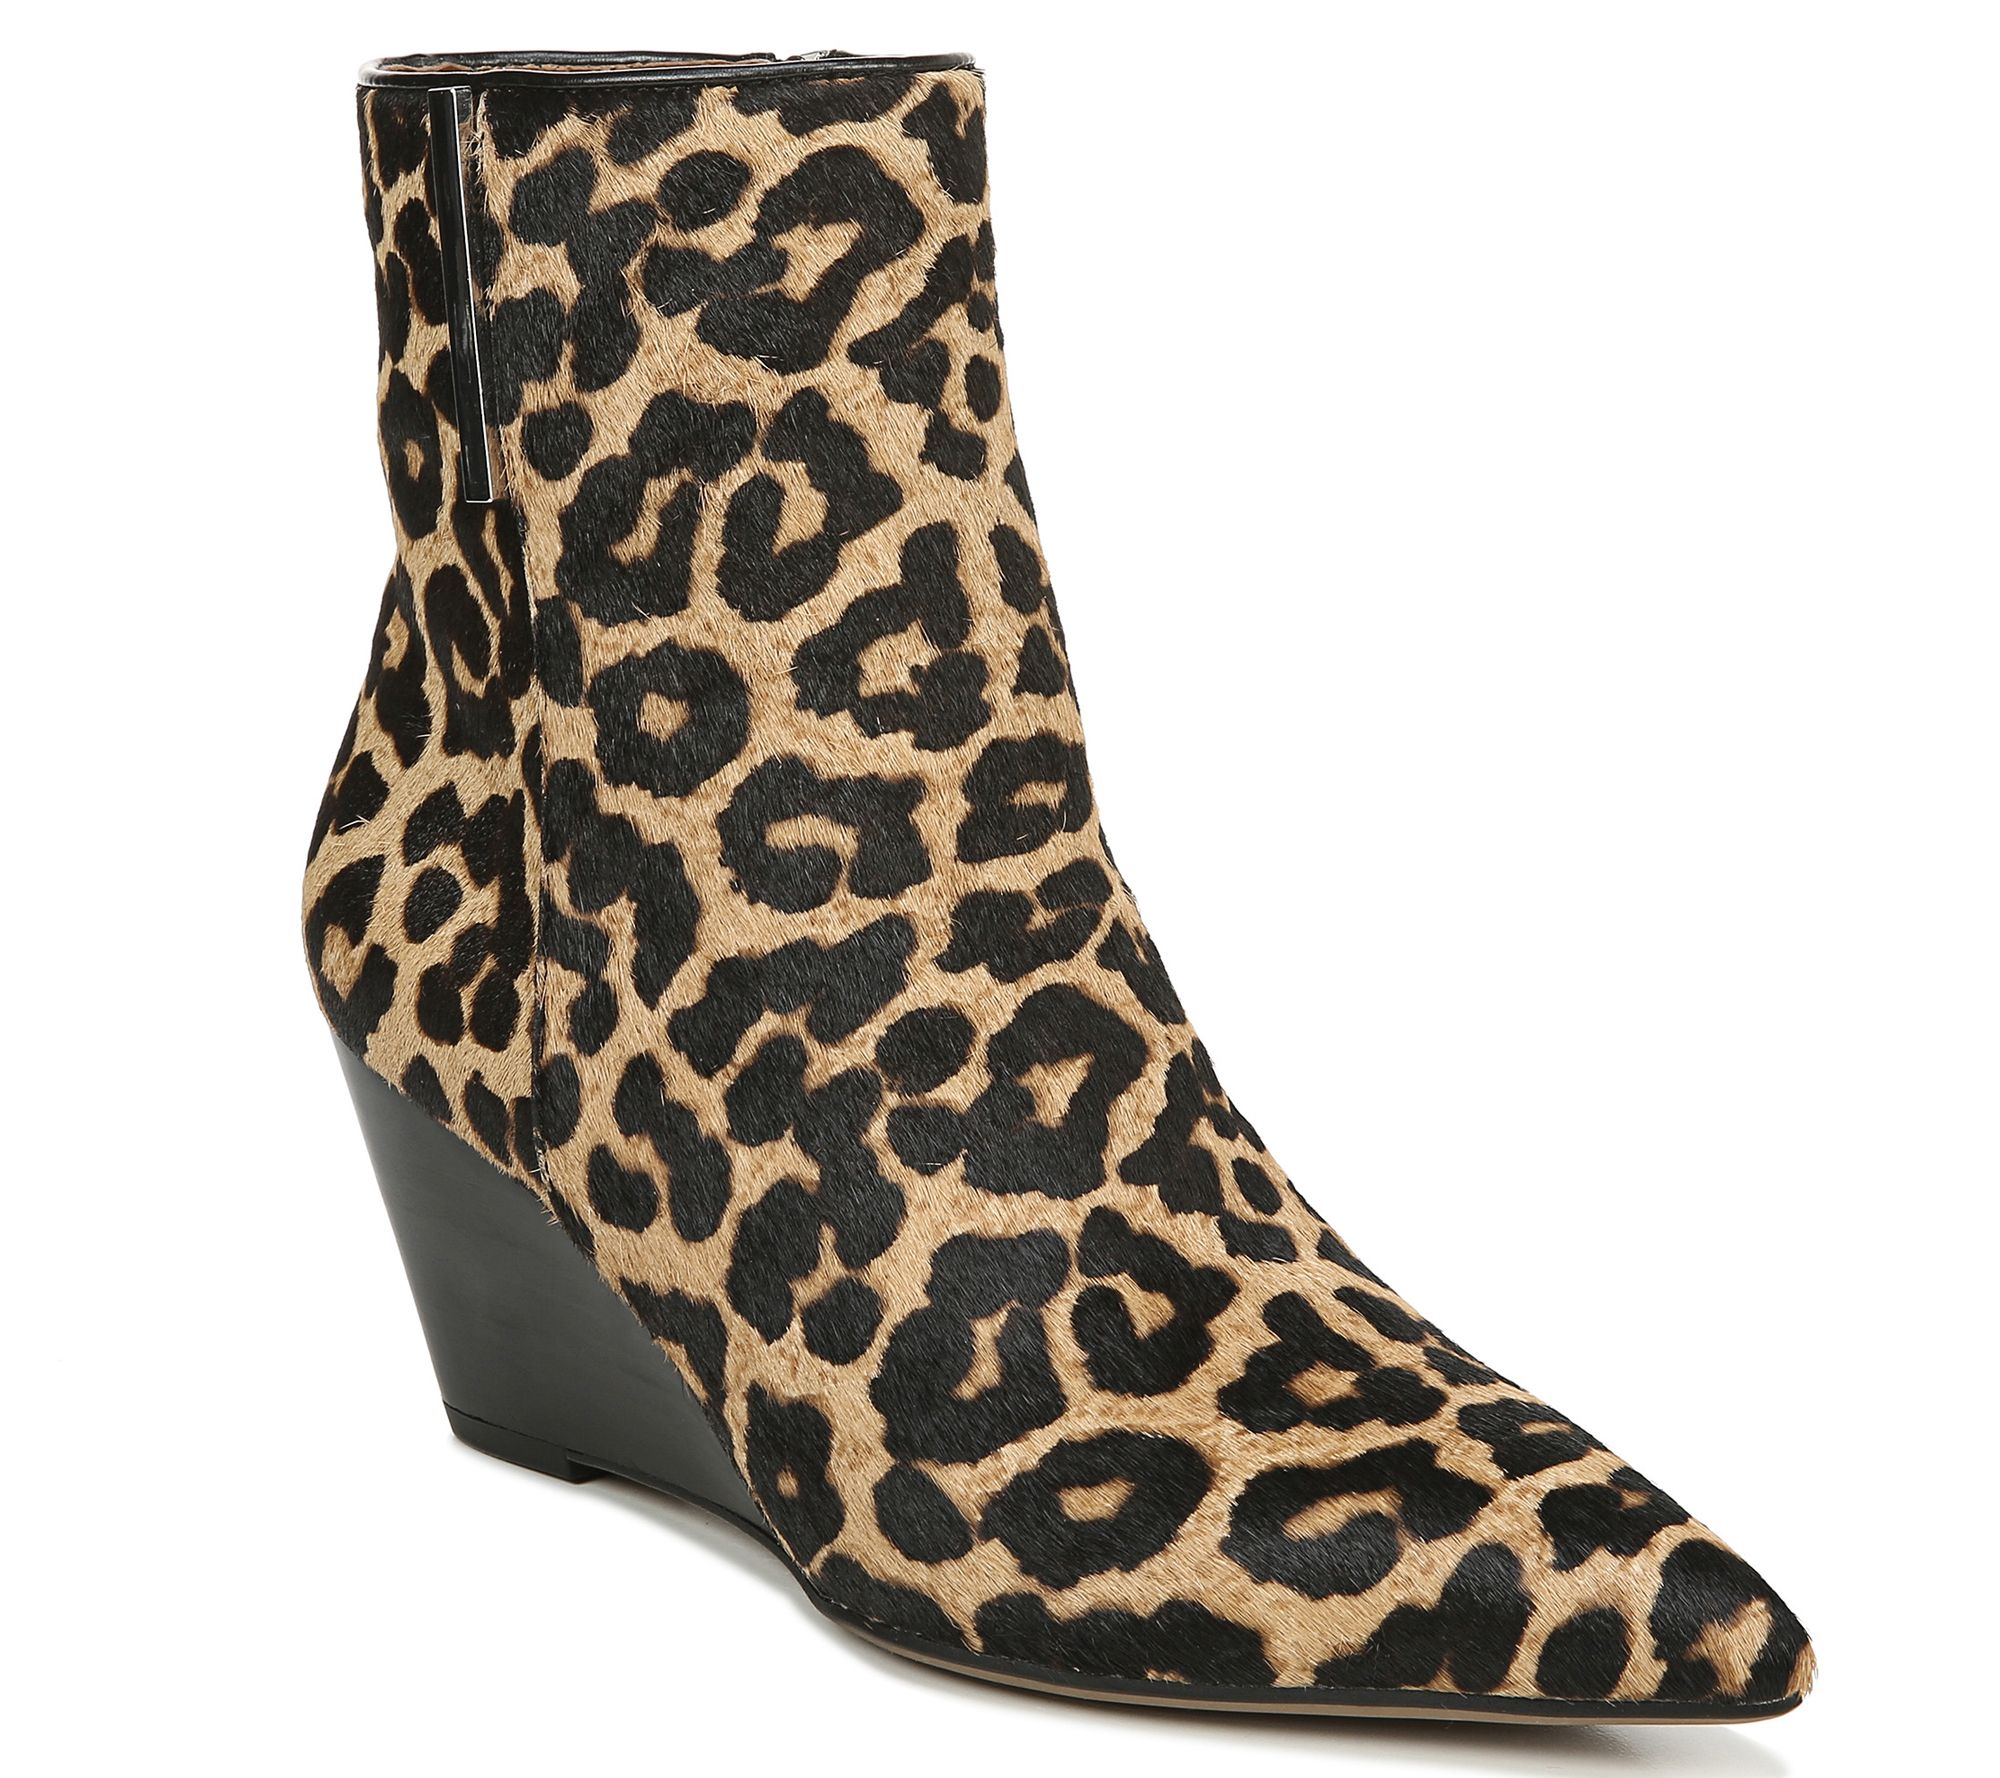 qvc leopard shoes